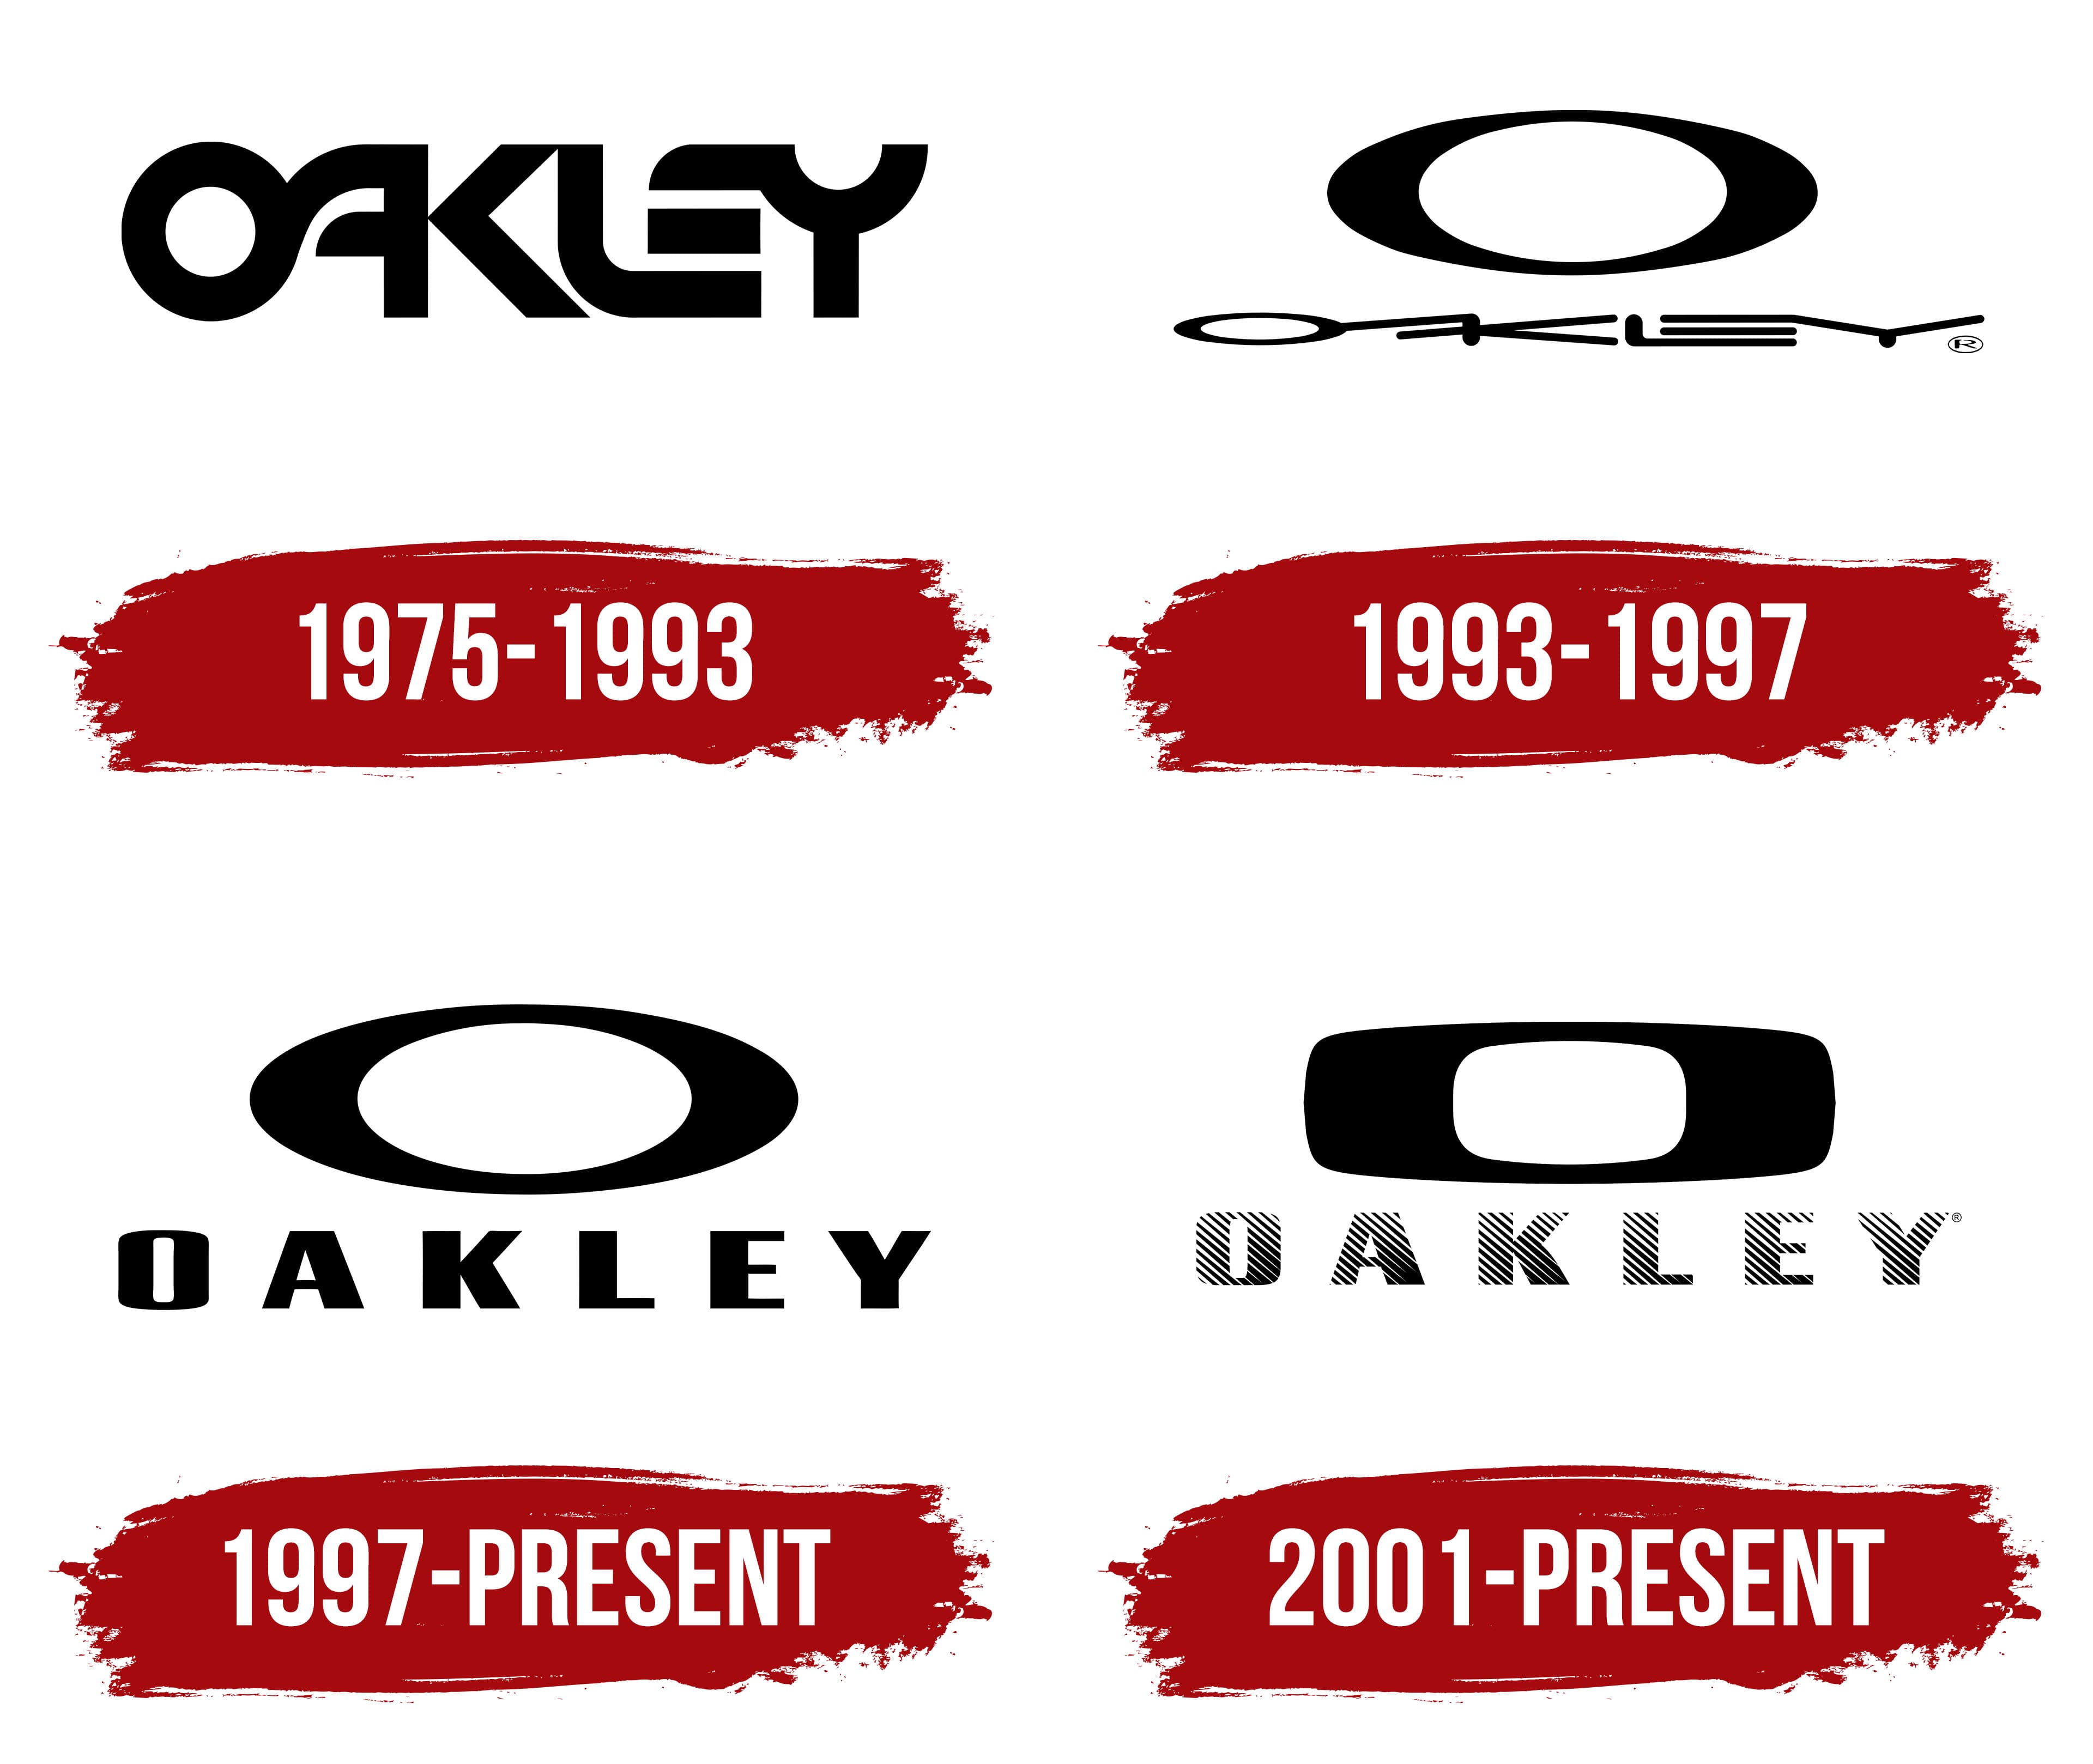 oakley-logo - City of Oakley